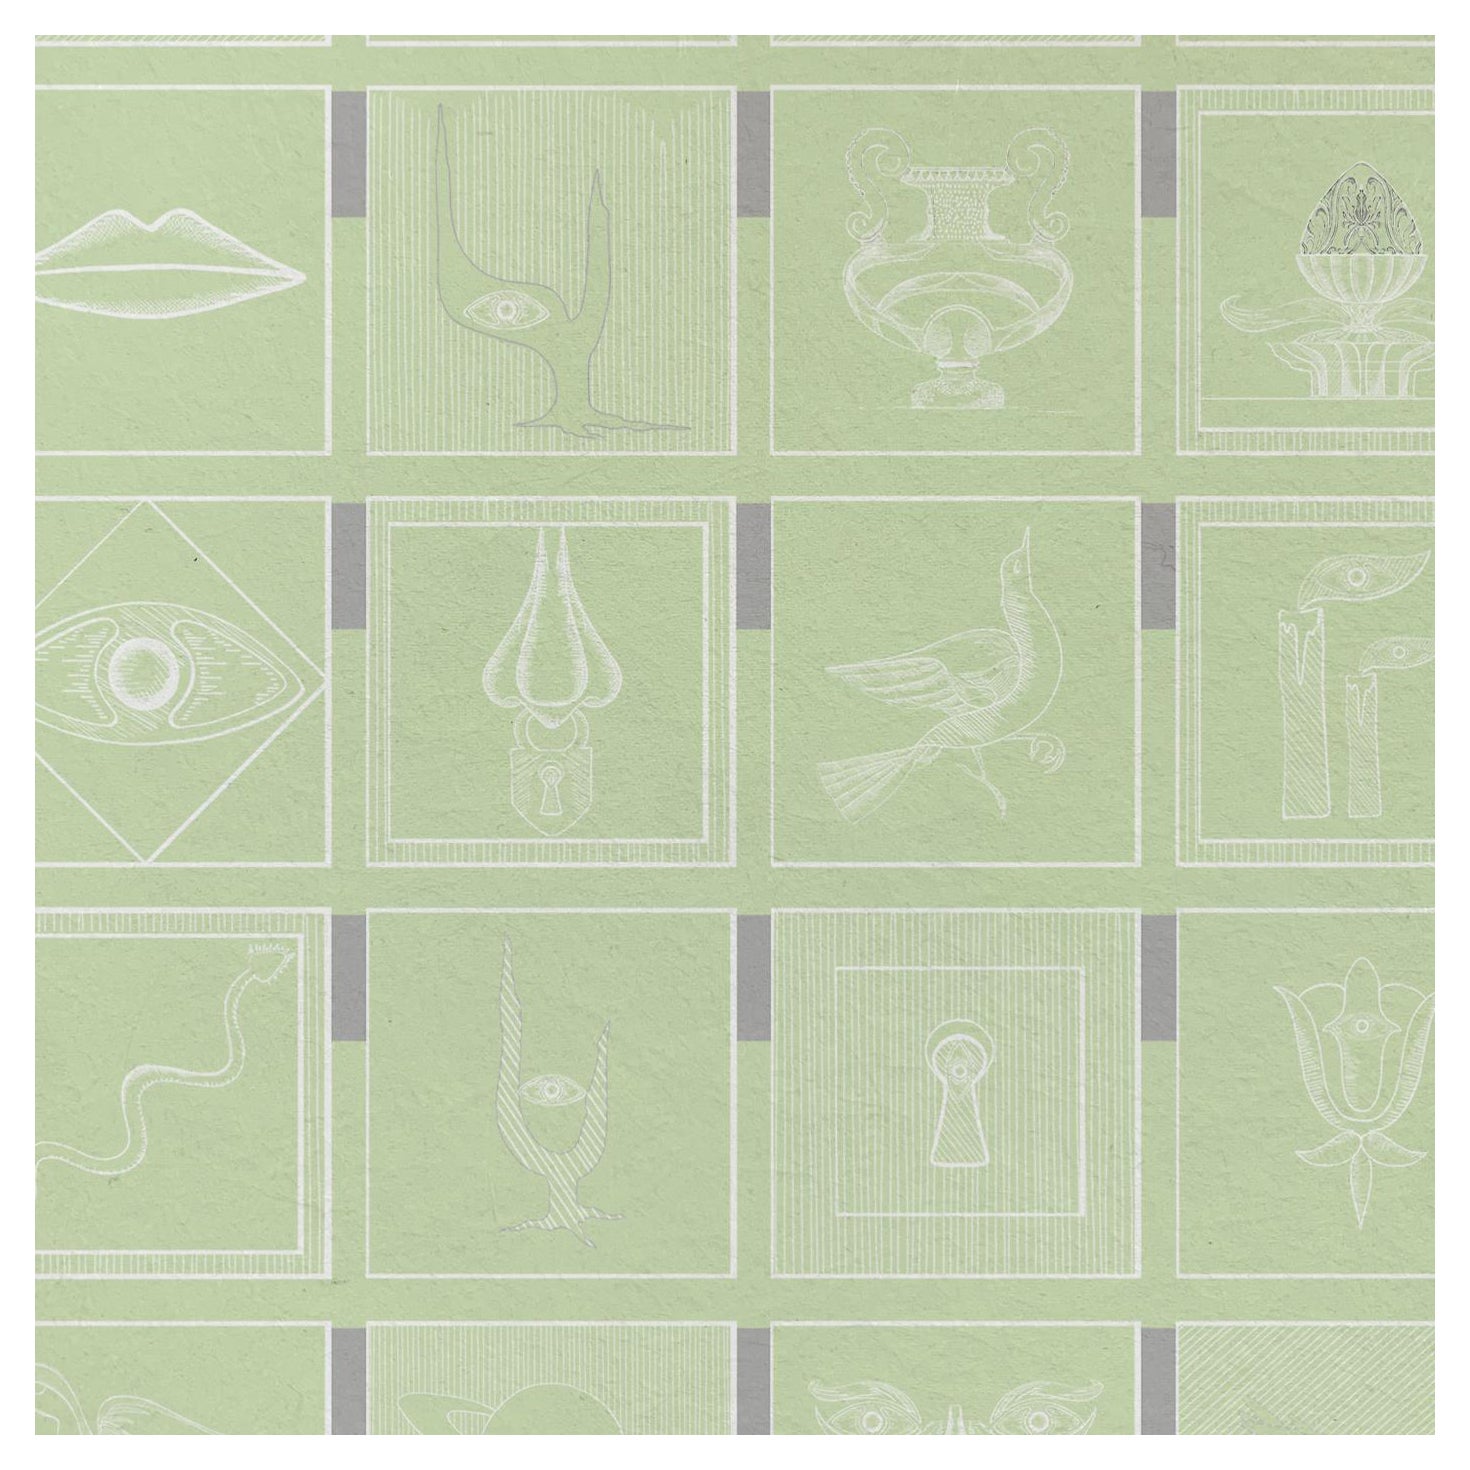 Alchemici Verde Morbido Wallpaper, Essenziali collection